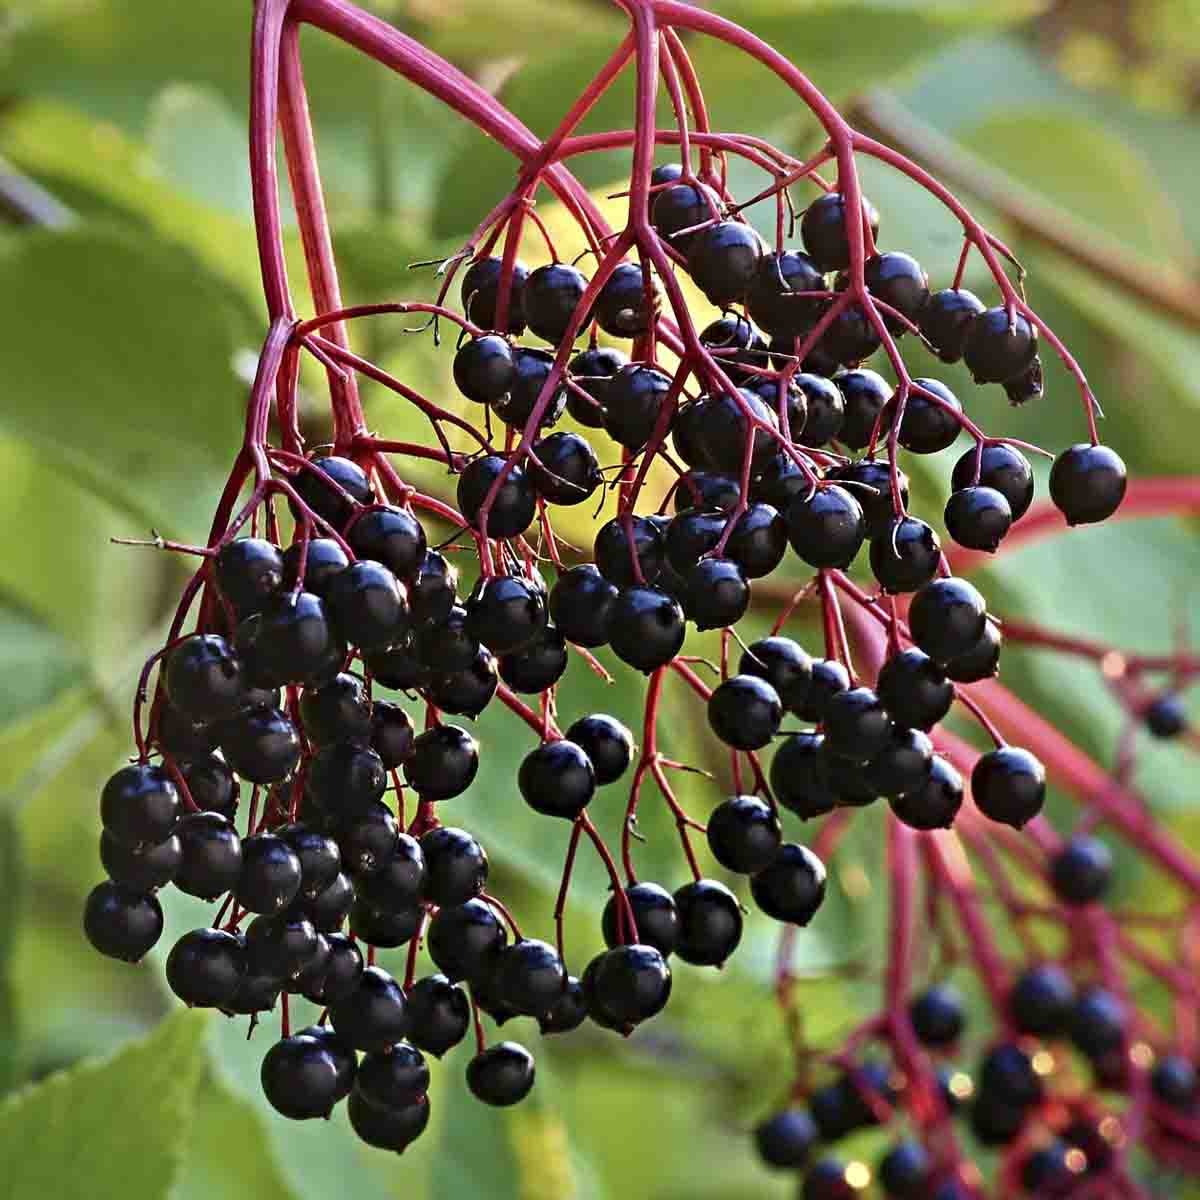 Ripe, dark purple elderberries hang from elderberry tree.